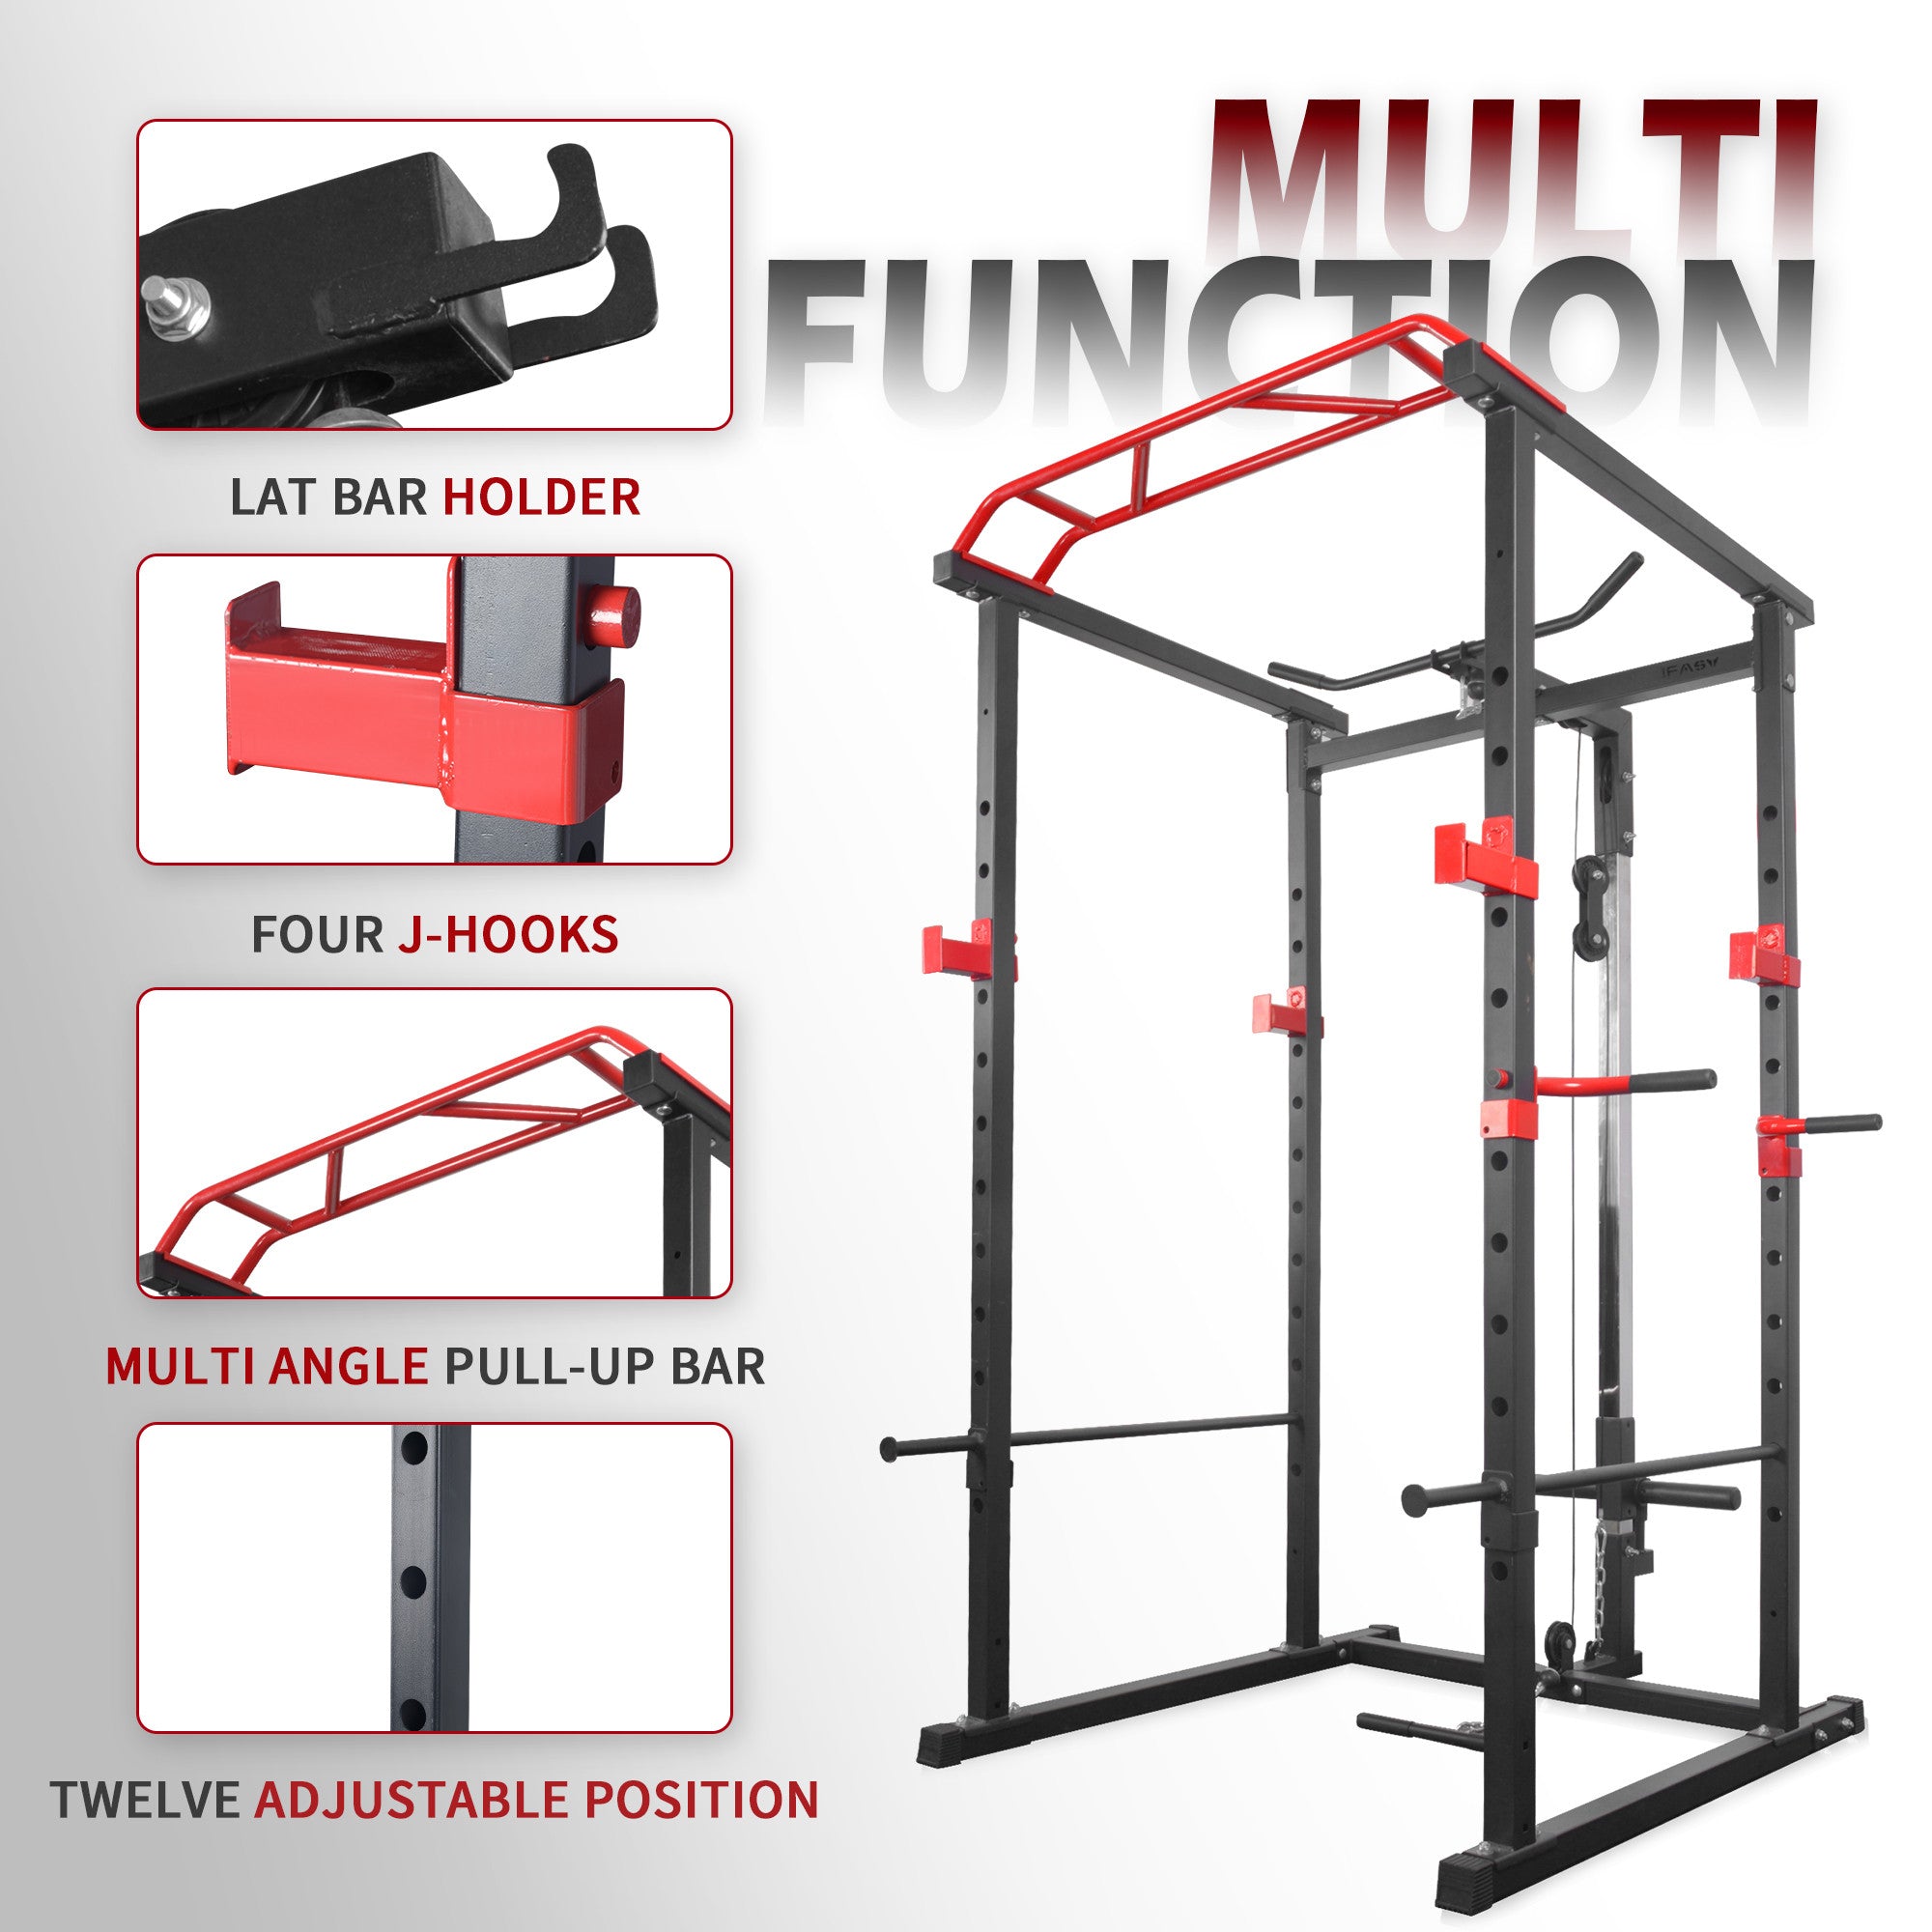 Muti function power rack 